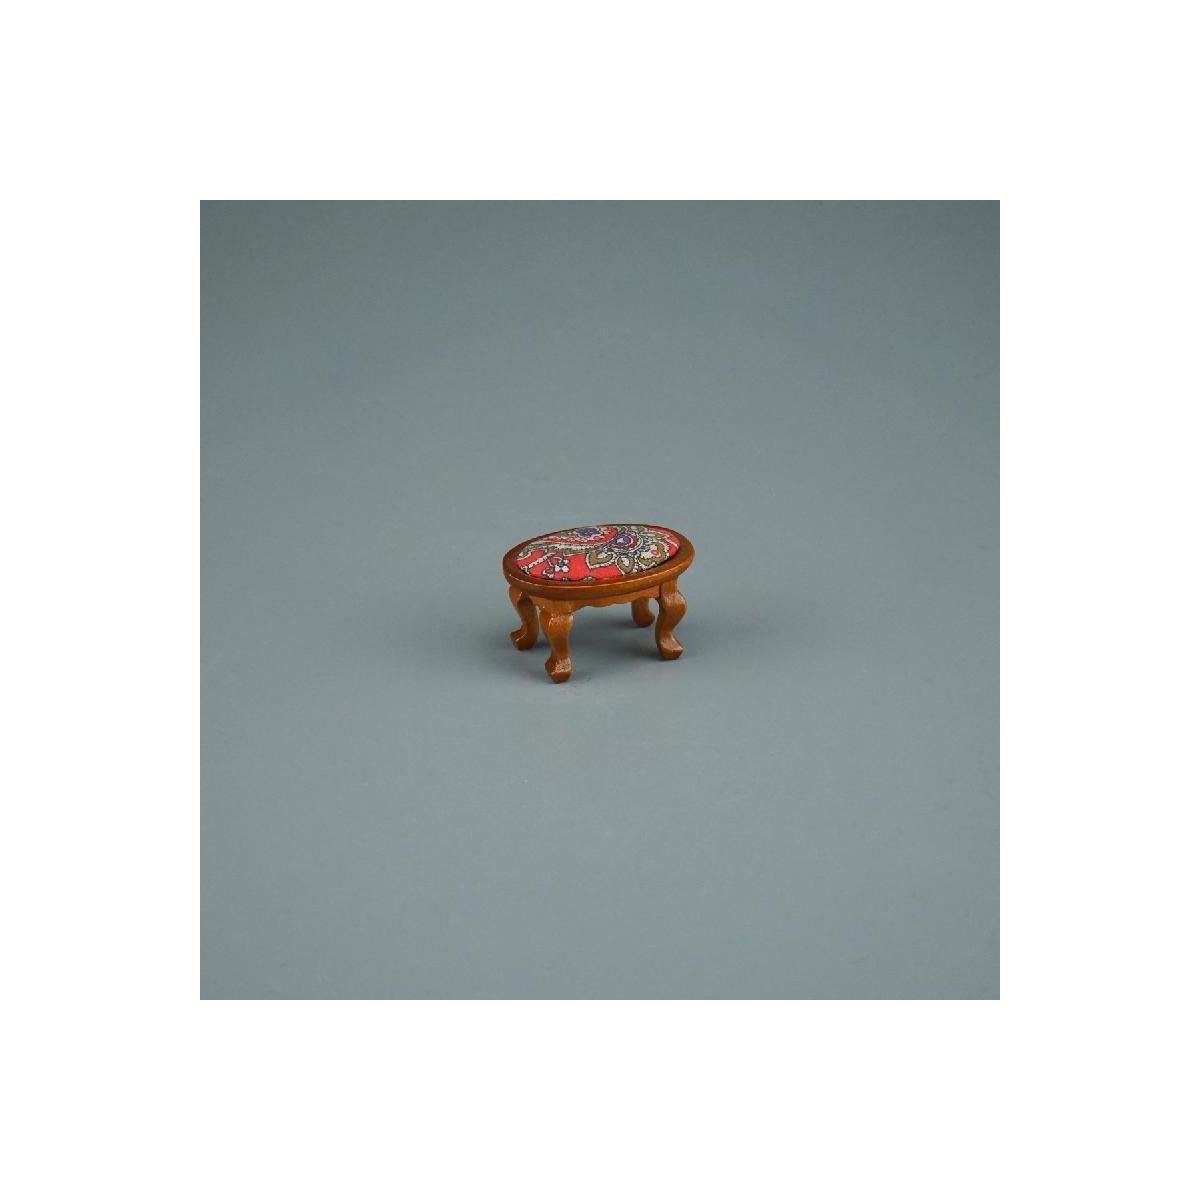 Reutter Porzellan Dekofigur 001.862/4 - Gepolsterter Hocker rot, Miniatur im Maßstab 1:12